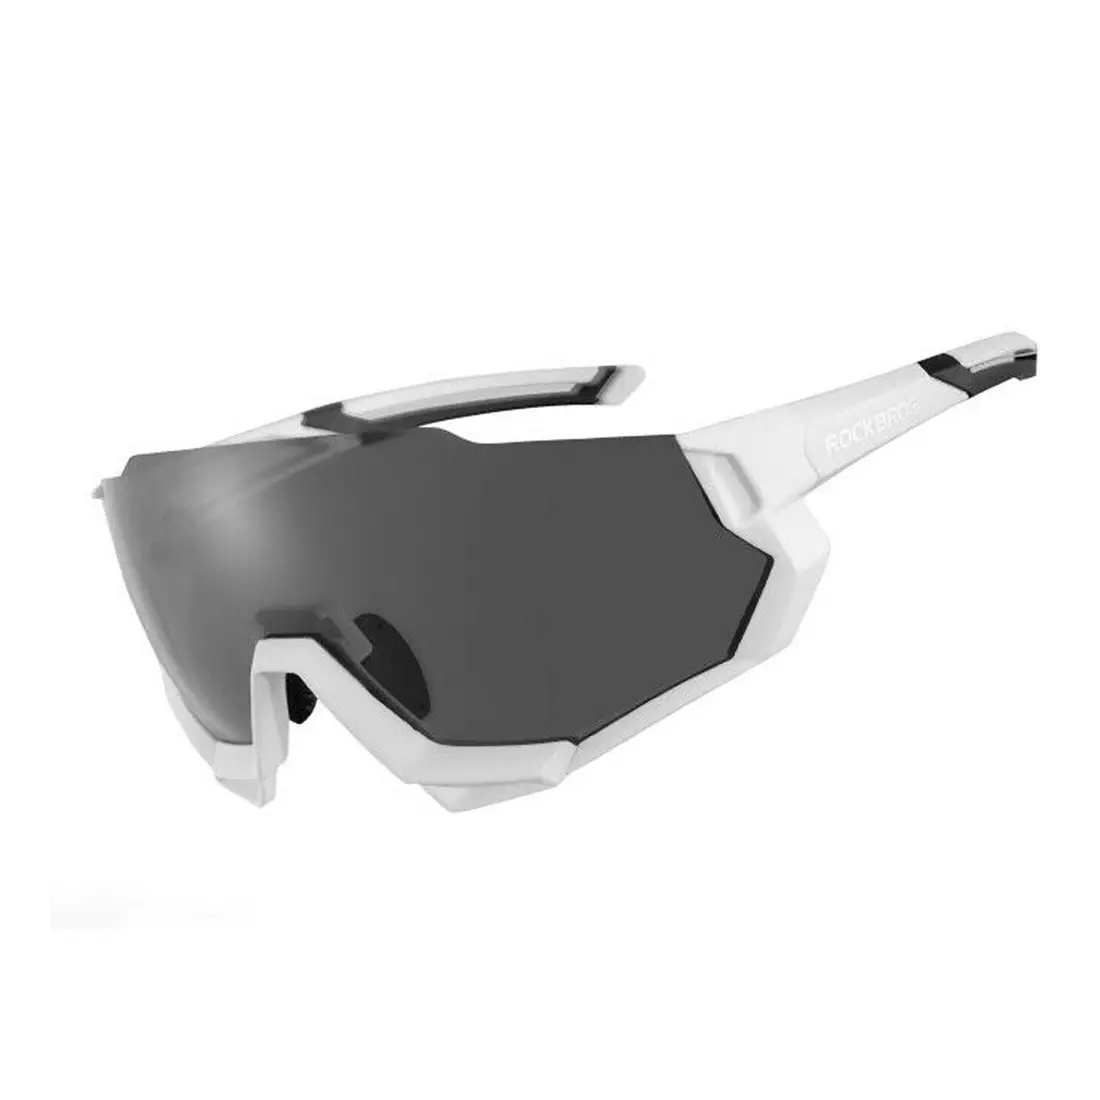 Rockbros 10132 Fahrrad-/Sportbrille mit polarisierten 5 Wechselgläsern weiß